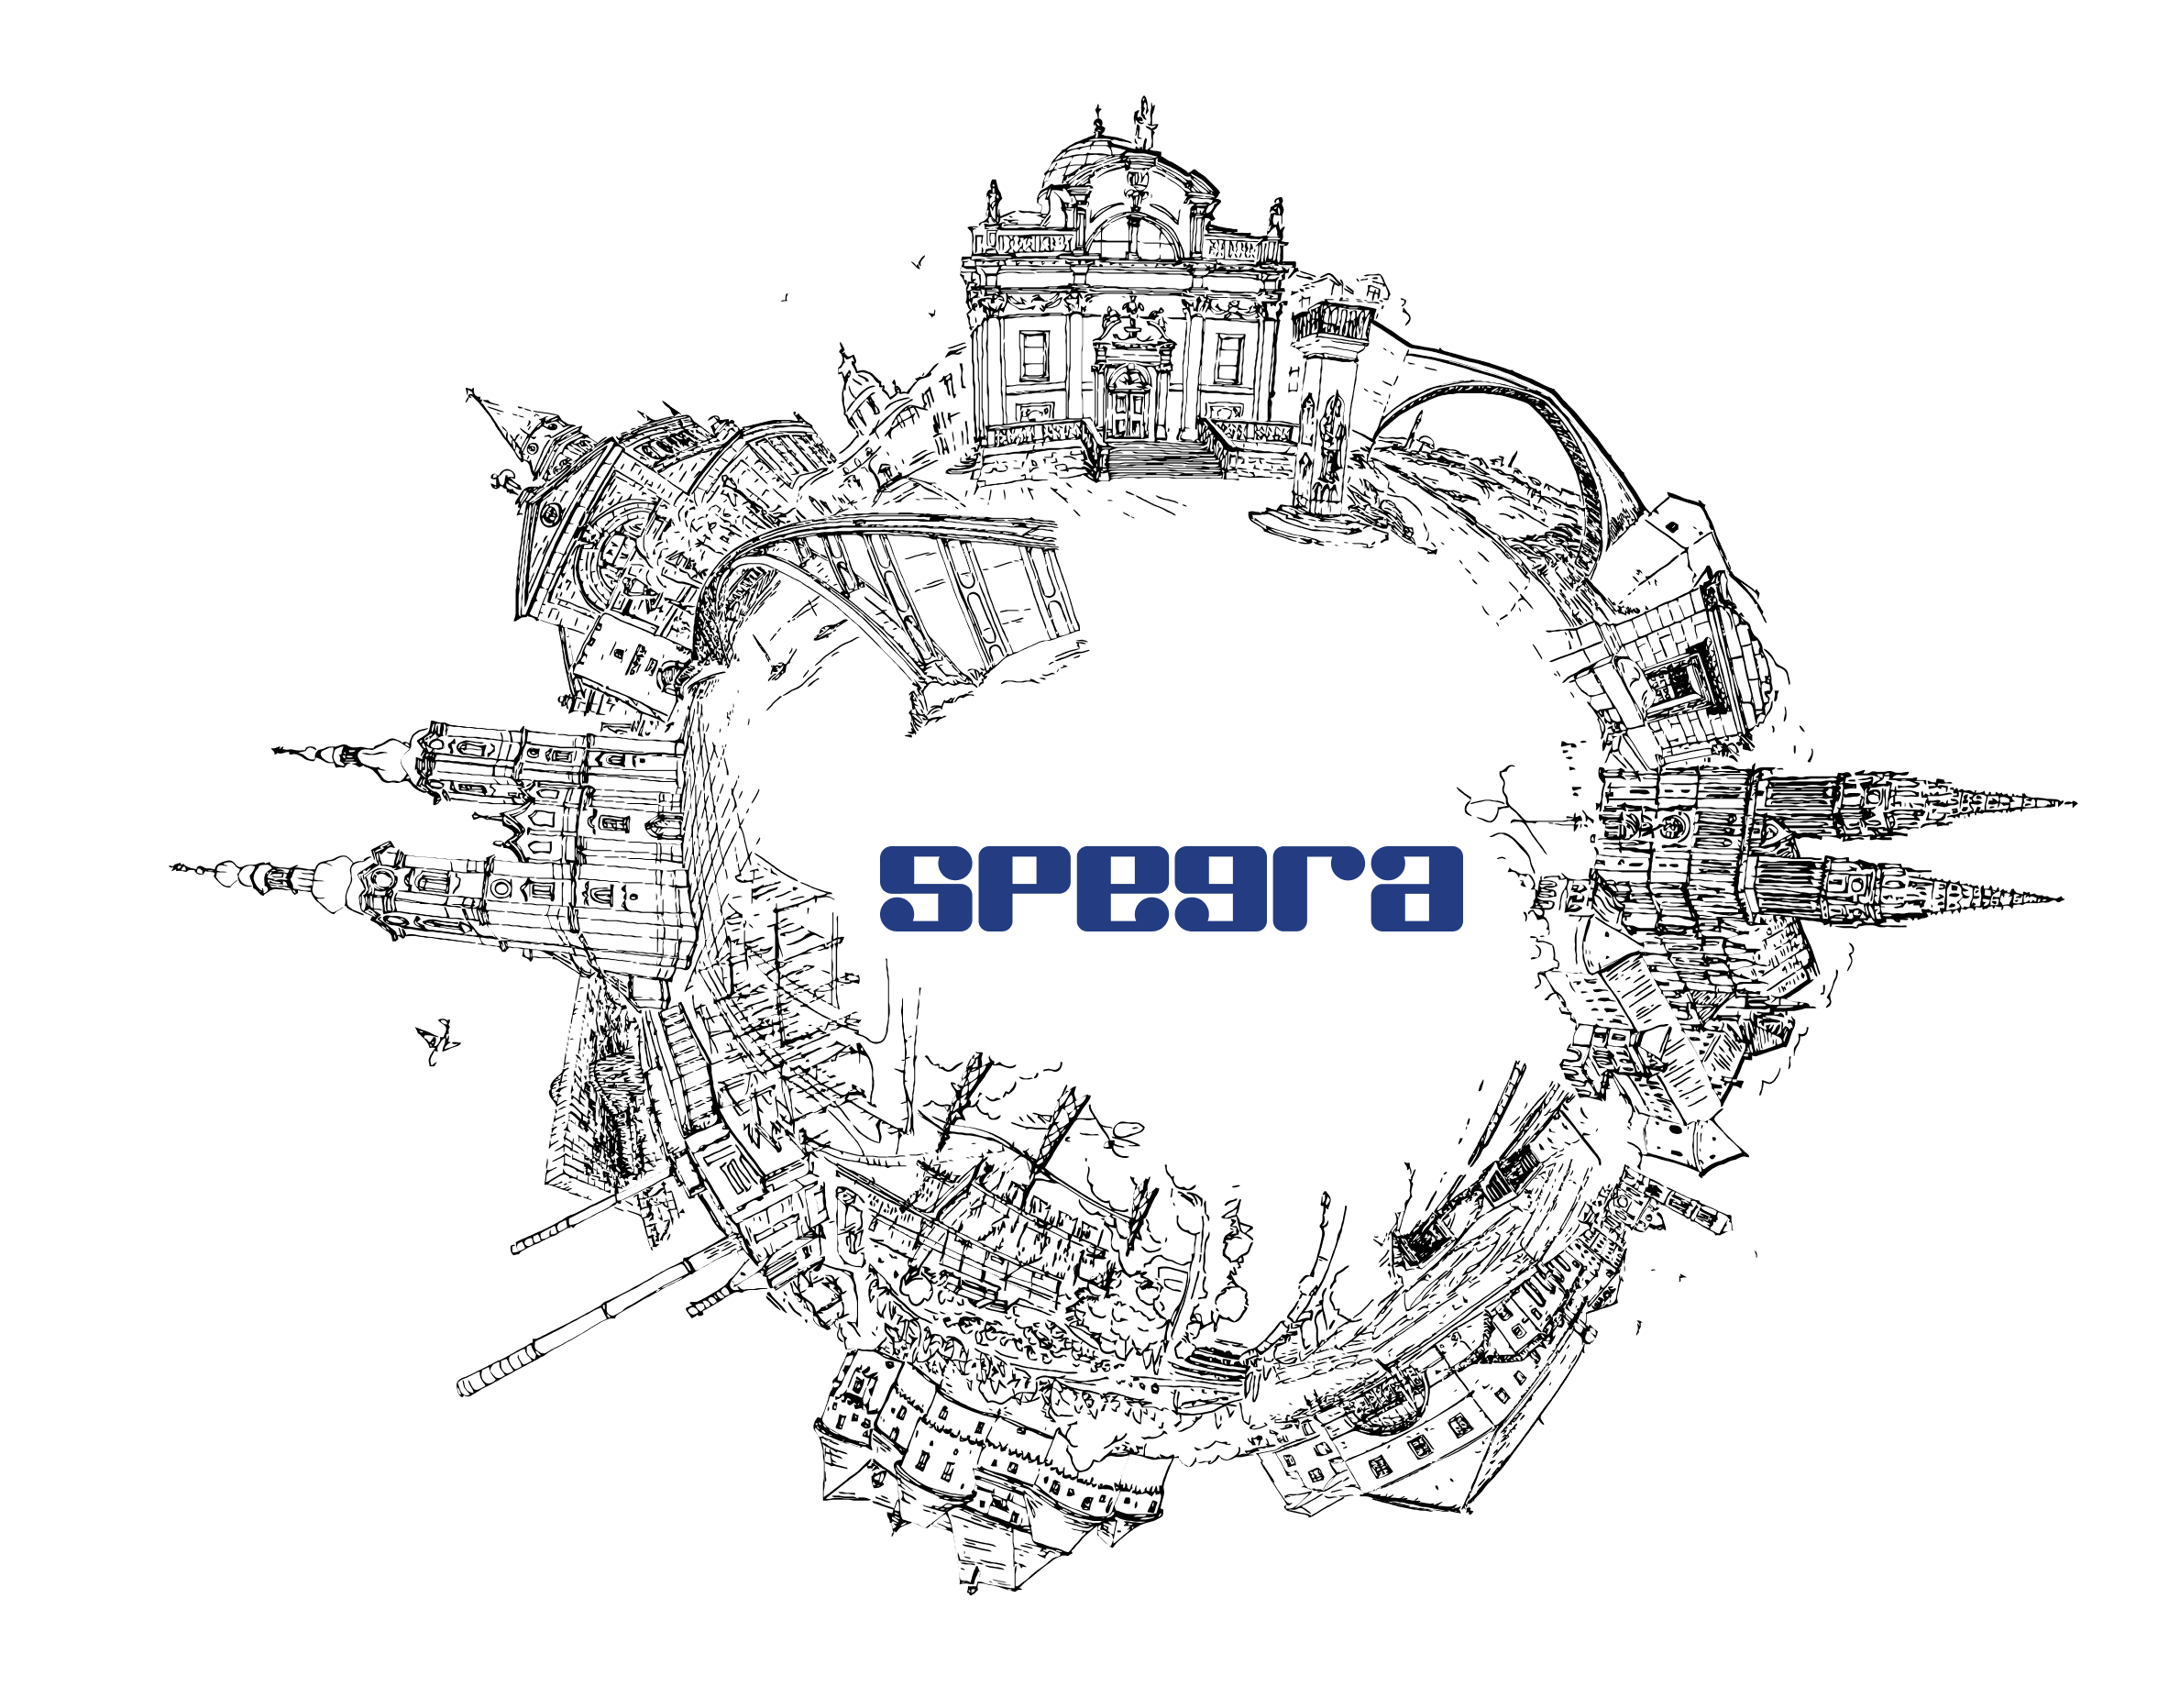 SPOJENA_cb-resize (1) 1-logo.png